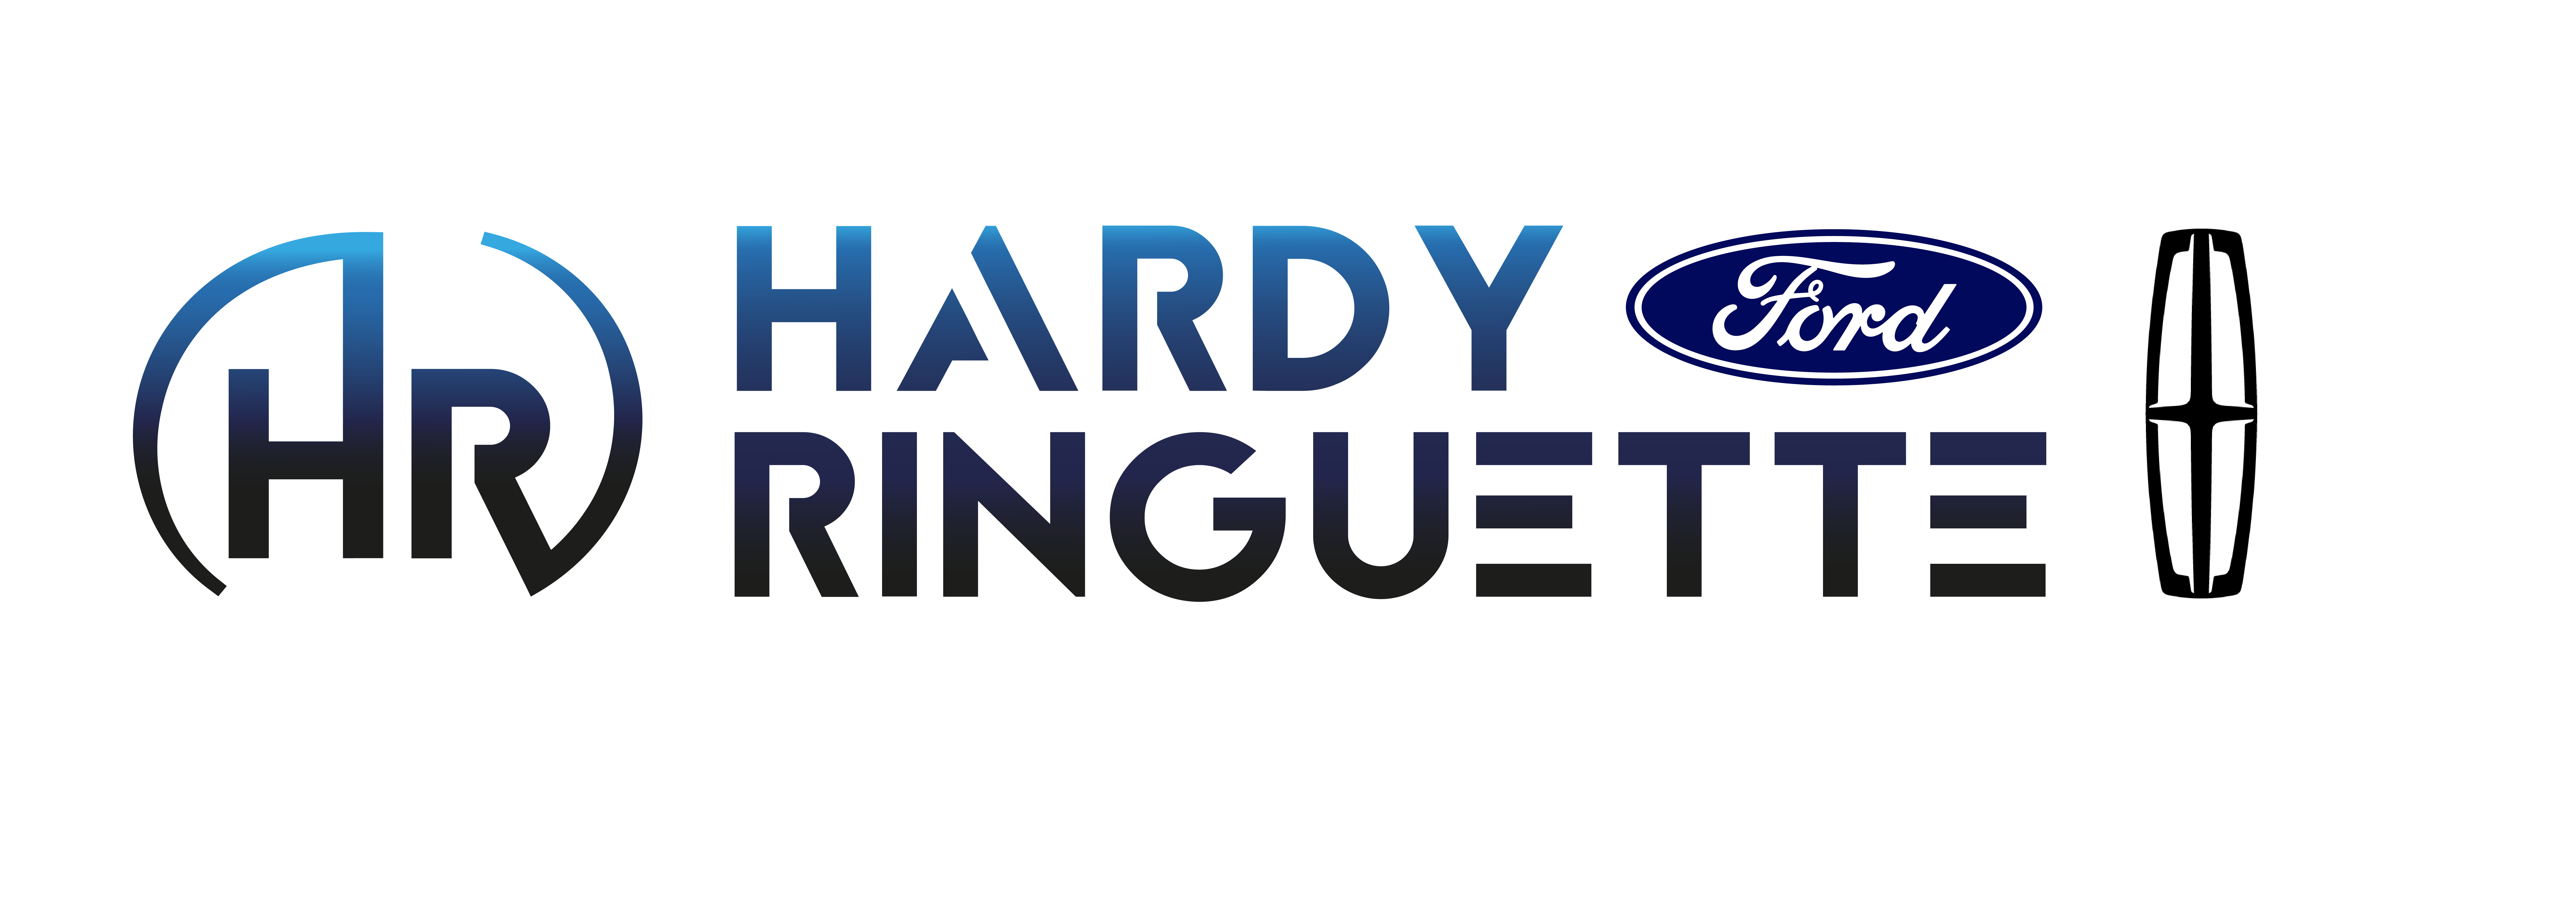 Hardy Ringuette